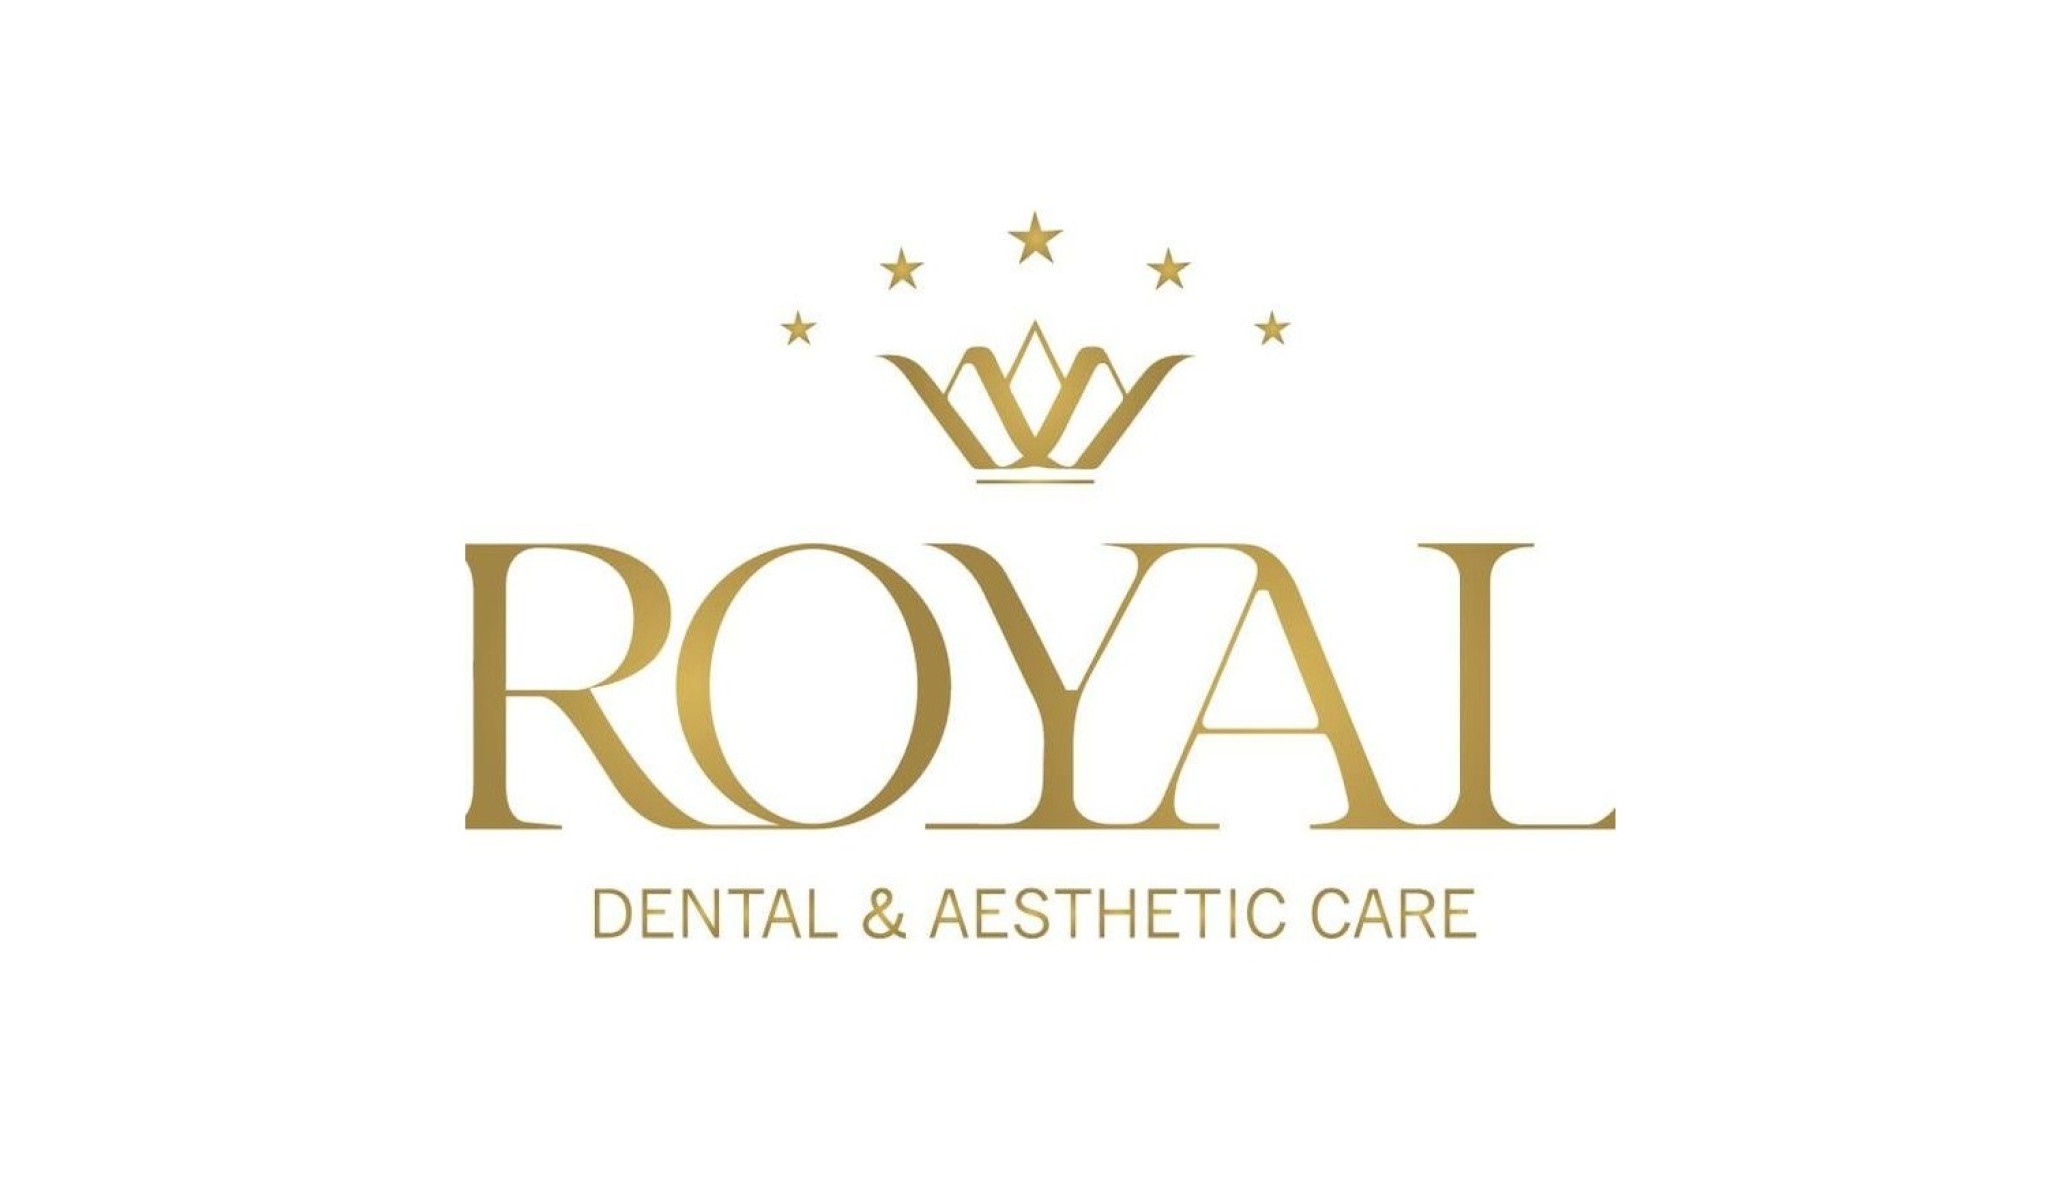 Royal Dental Care